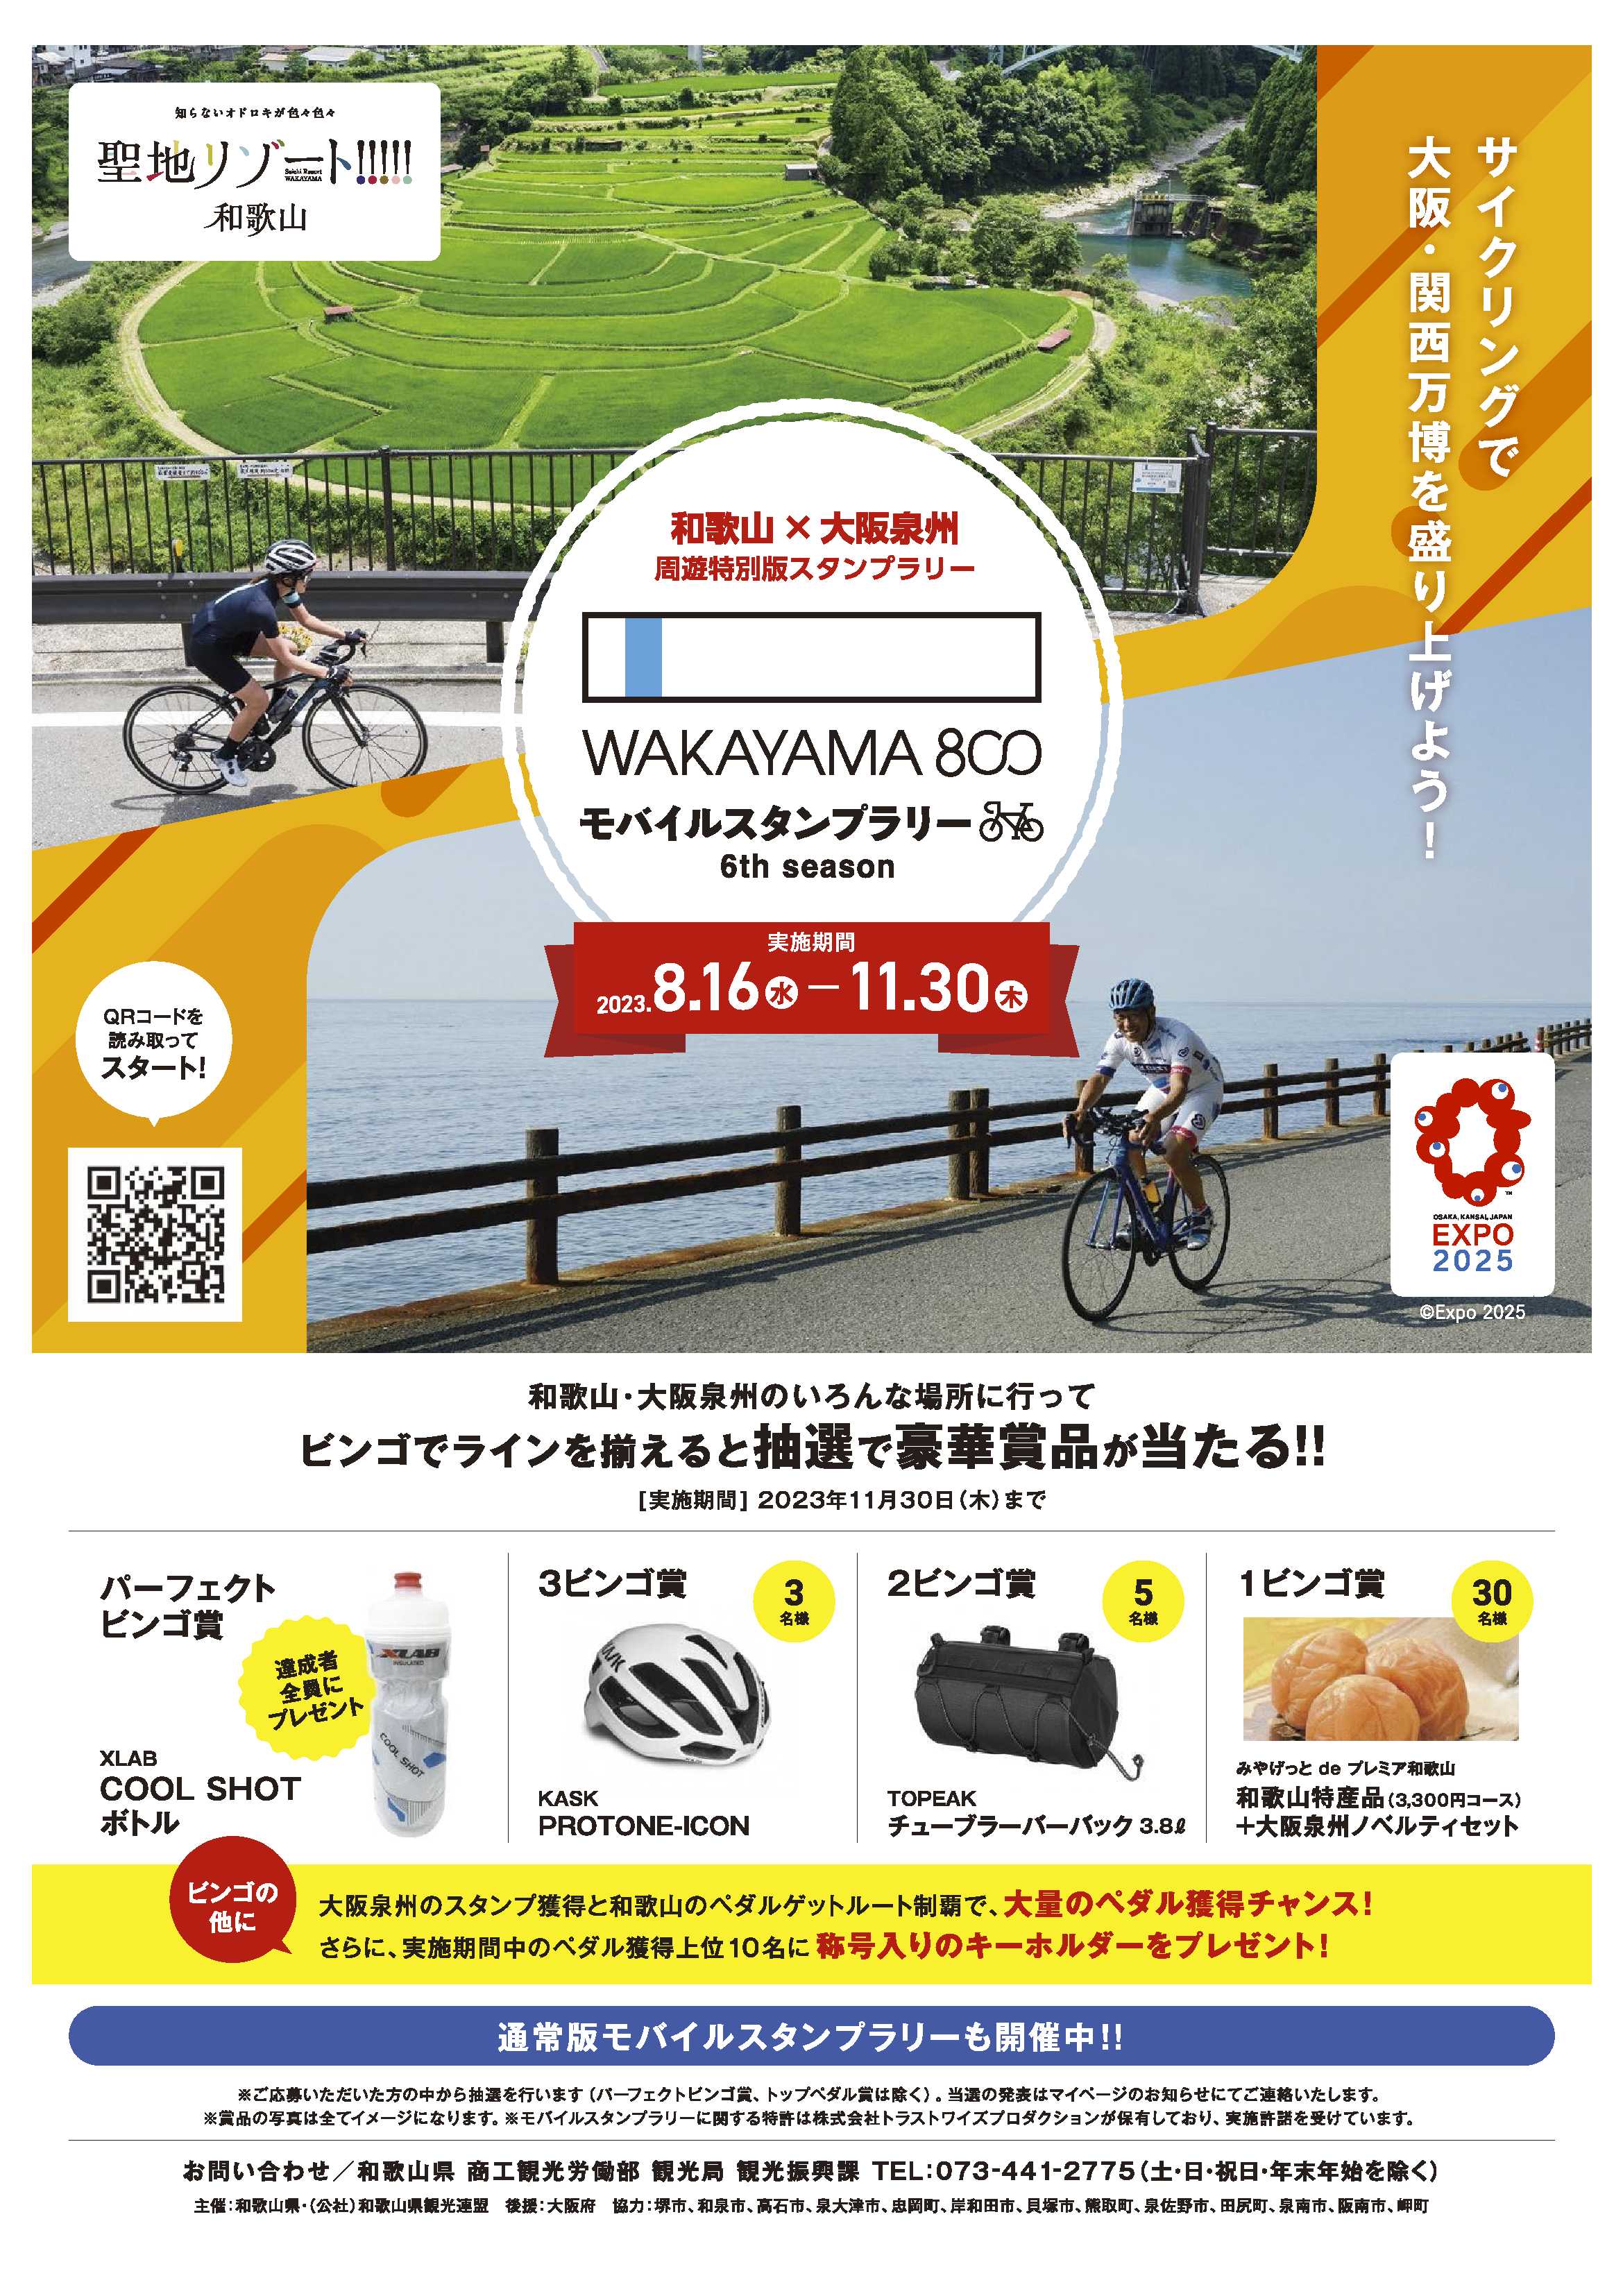 和歌山×大阪泉州 周遊特別版スタンプラリー！ サイクリングで大阪・関西万博を盛り上げよう！